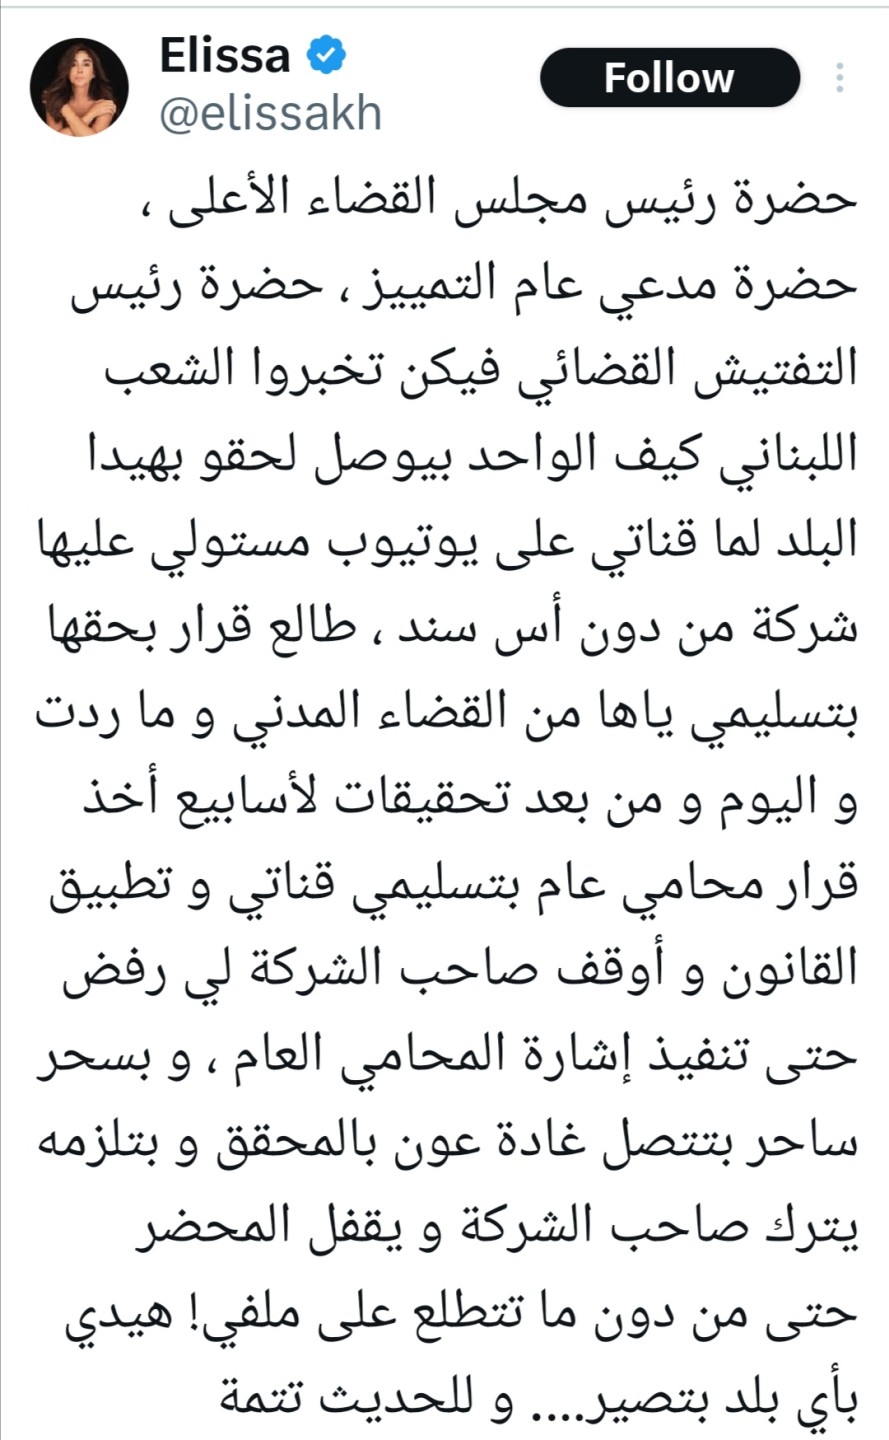 سرقة قناة إليسا علي اليوتيوب والمطربة الشهيرة تطالب القضاء اللبناني بحل المشكلة